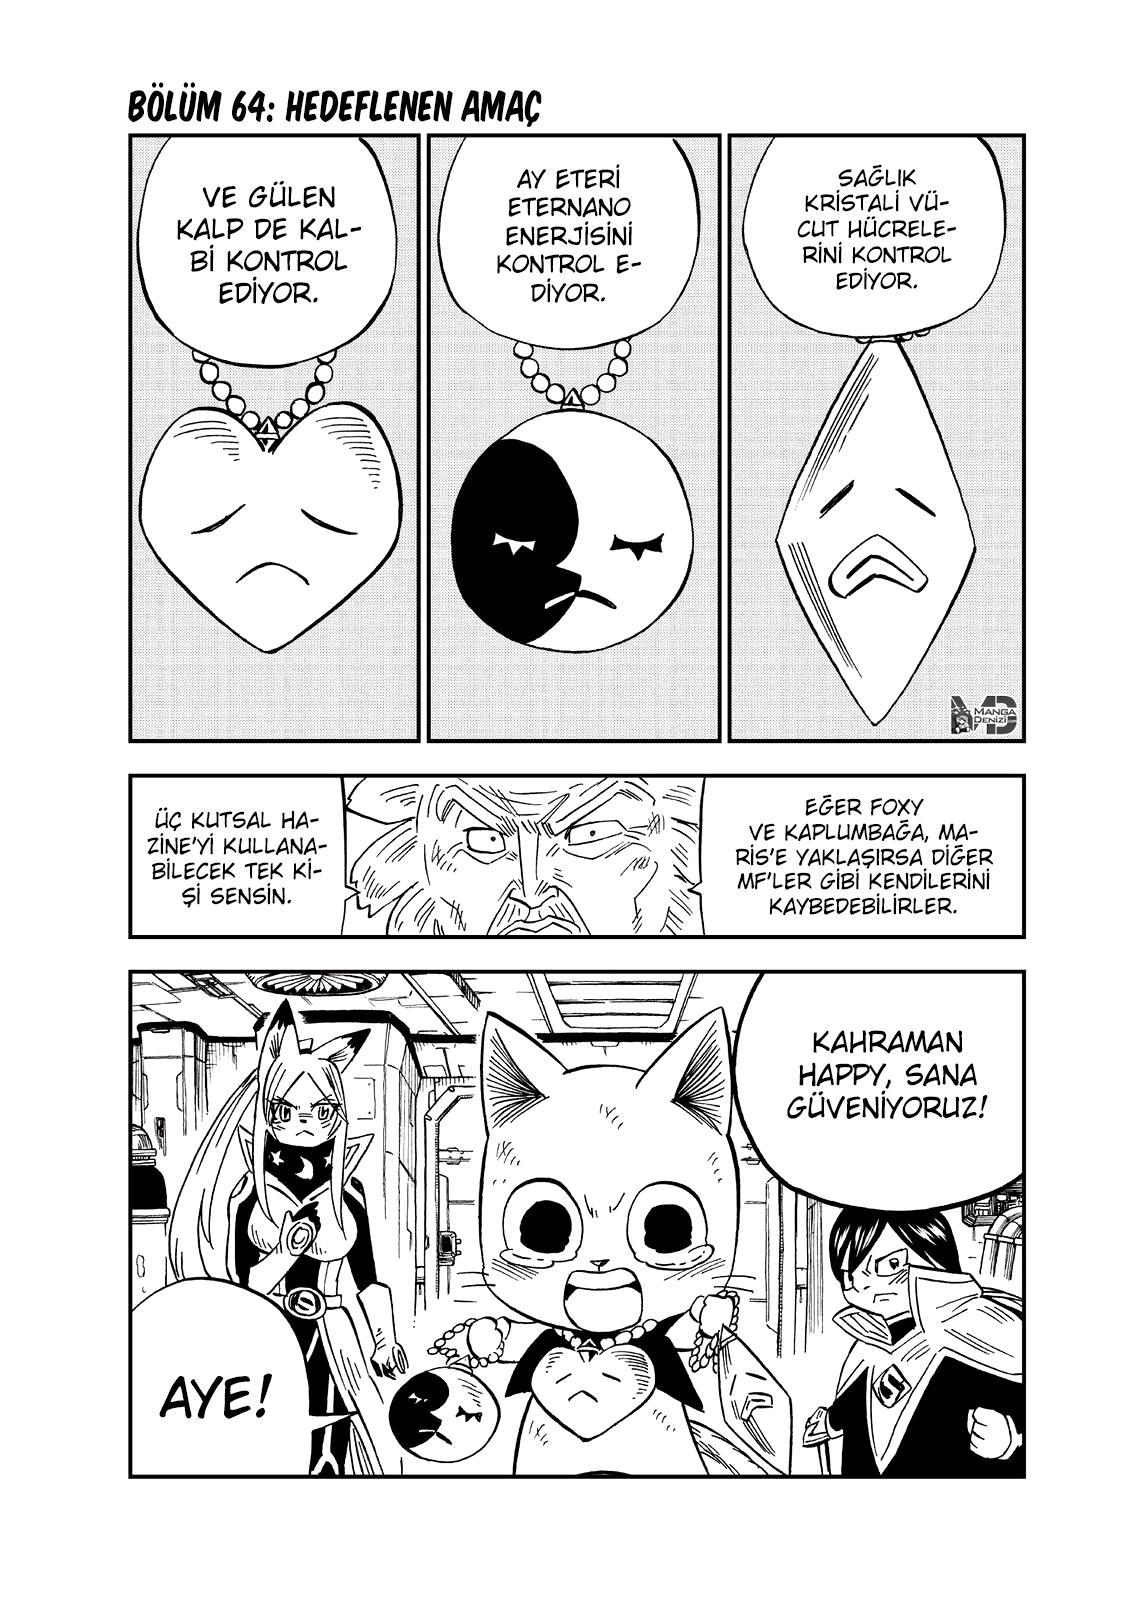 Fairy Tail: Happy's Great Adventure mangasının 64 bölümünün 2. sayfasını okuyorsunuz.